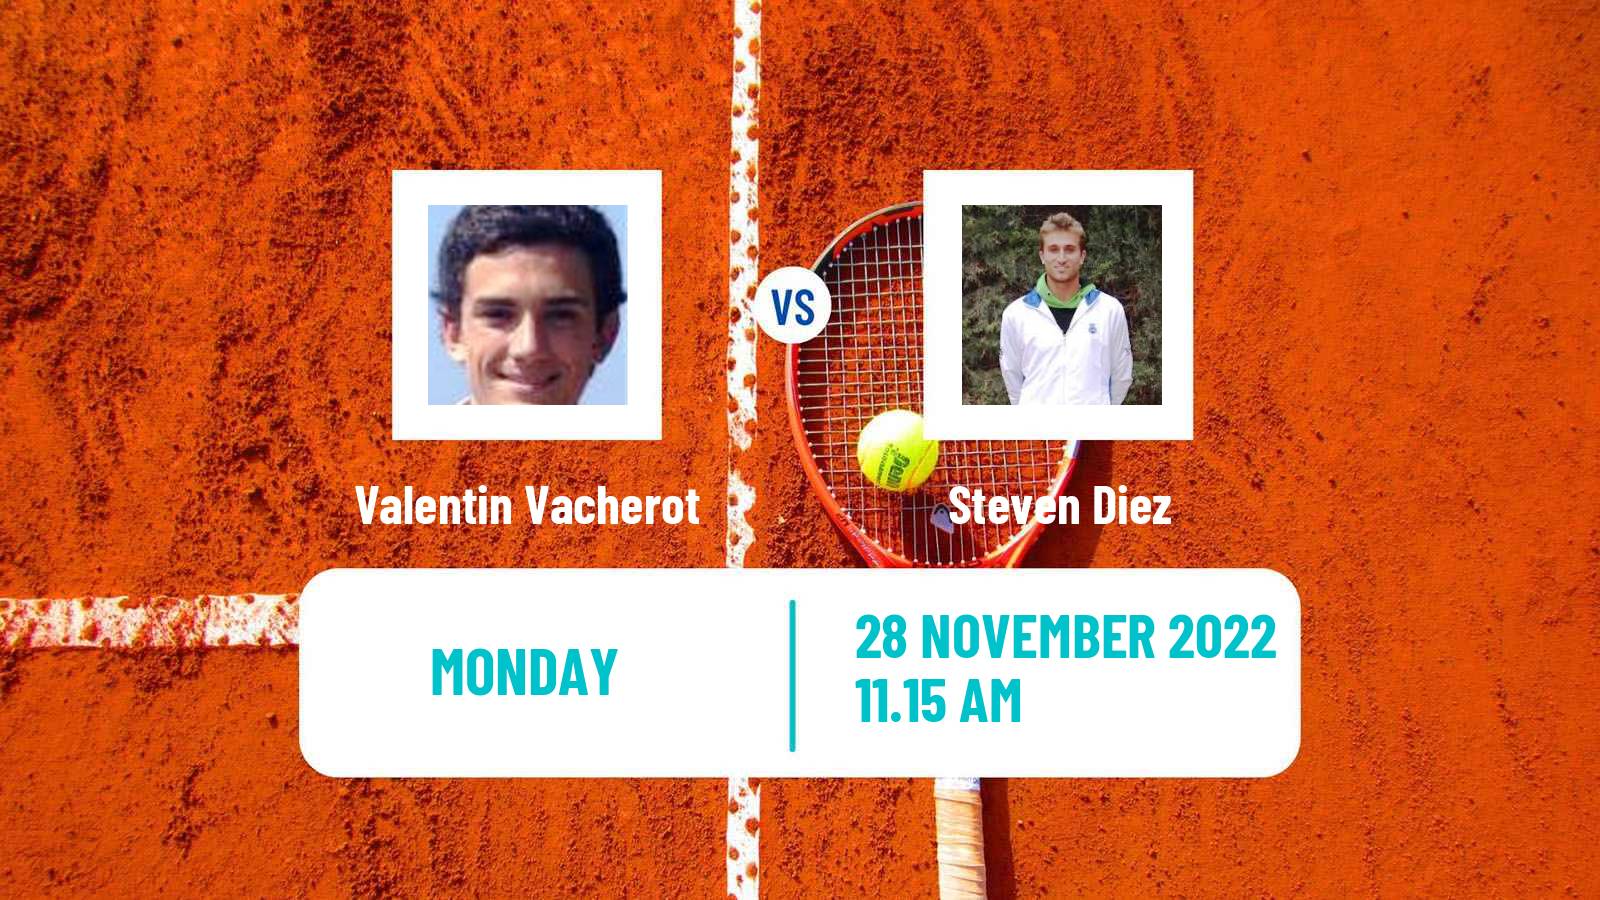 Tennis ATP Challenger Valentin Vacherot - Steven Diez